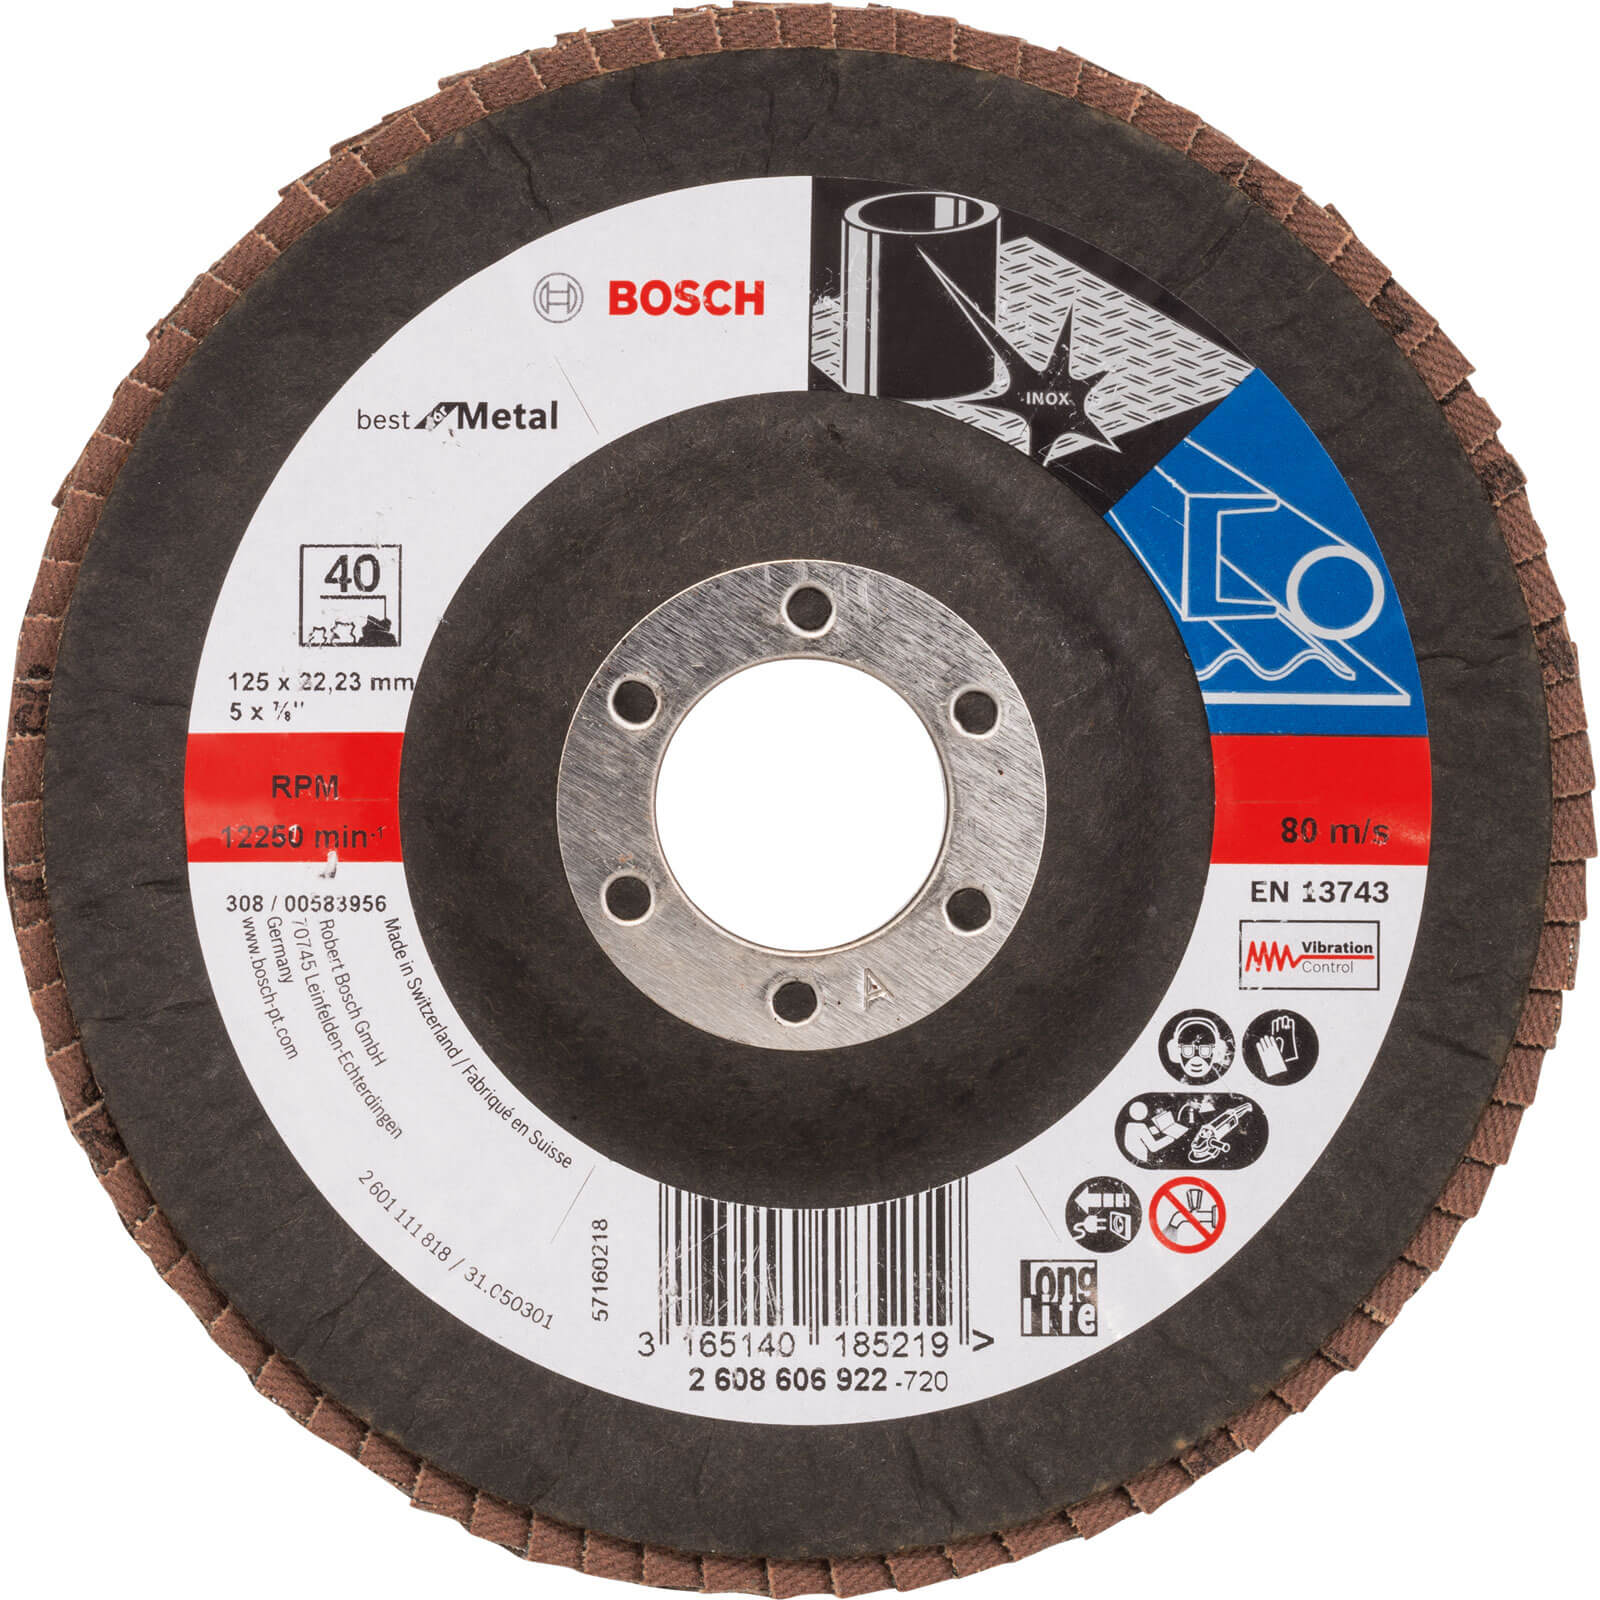 Photos - Cutting Disc Bosch Zirconium Abrasive Flap Disc 125mm 40g 